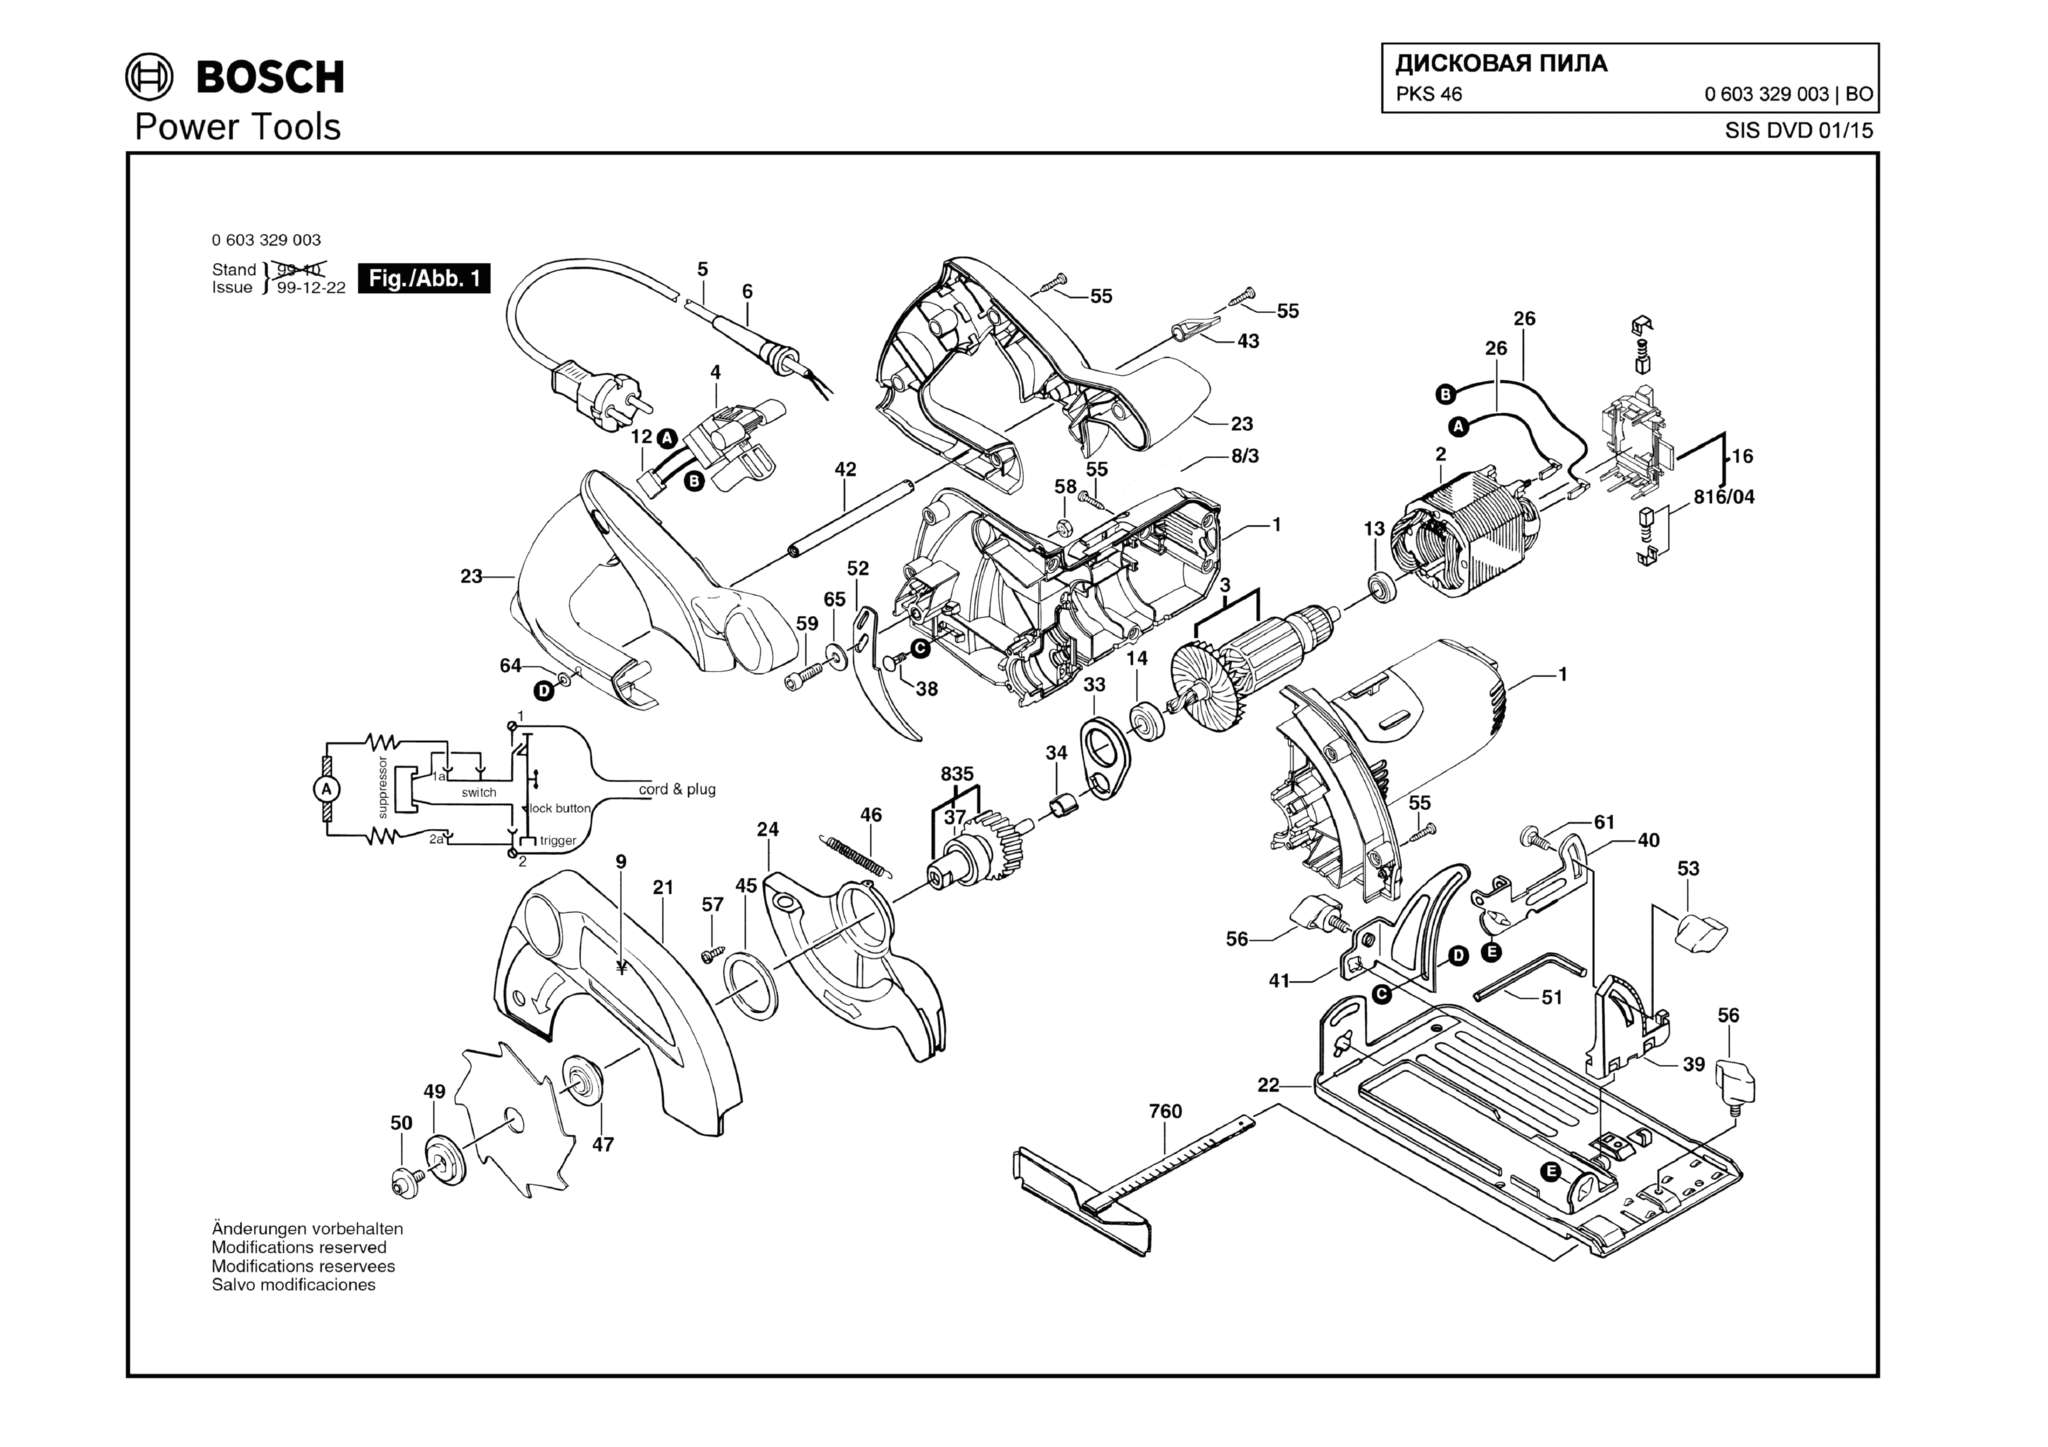 Запчасти, схема и деталировка Bosch PKS 46 (ТИП 0603329003)